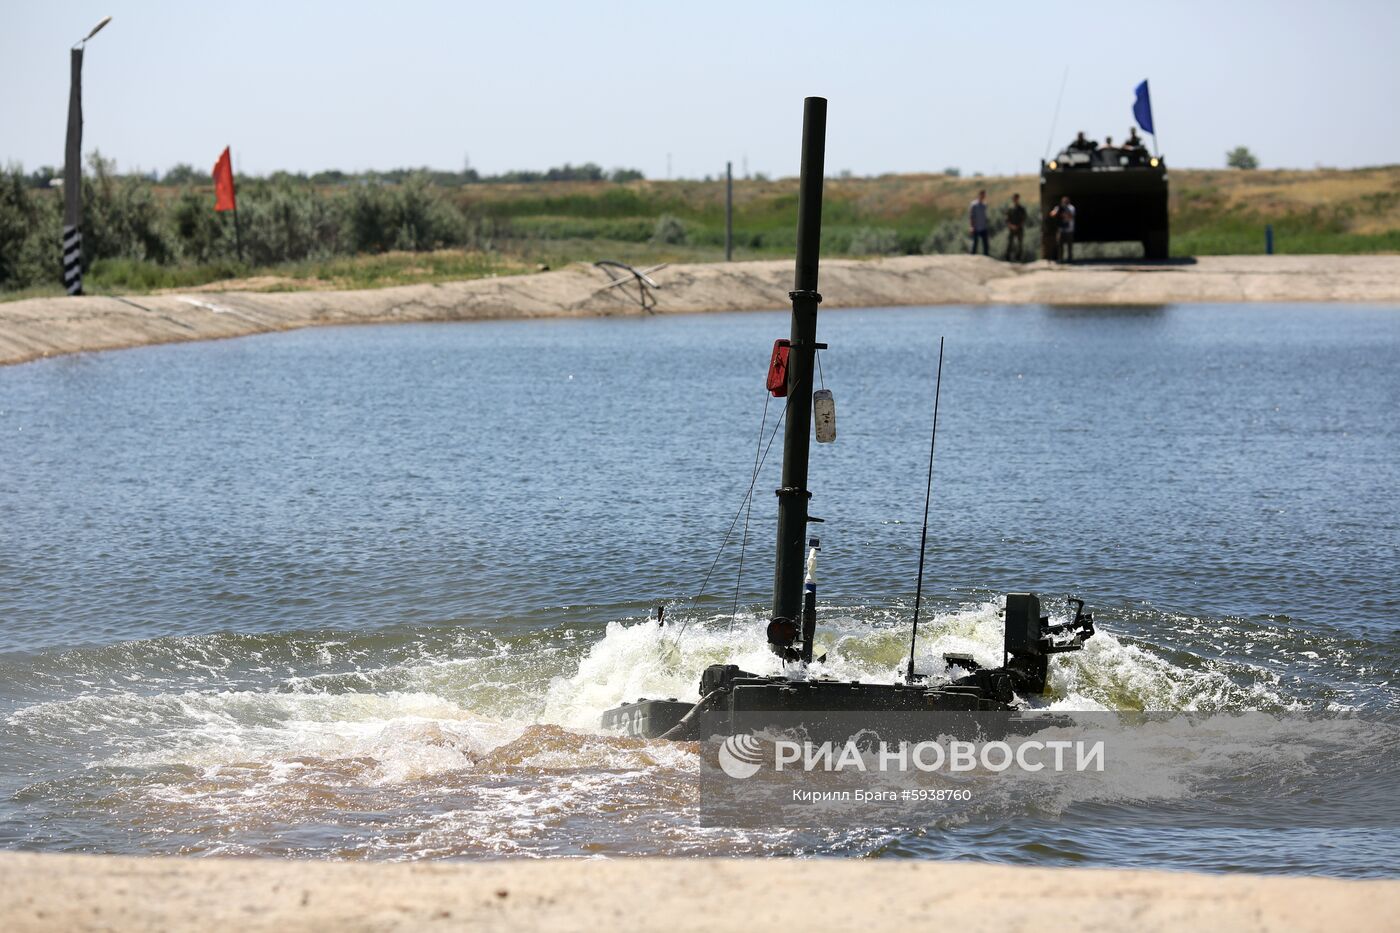 Демонстрация преодоления водных преград военной техникой